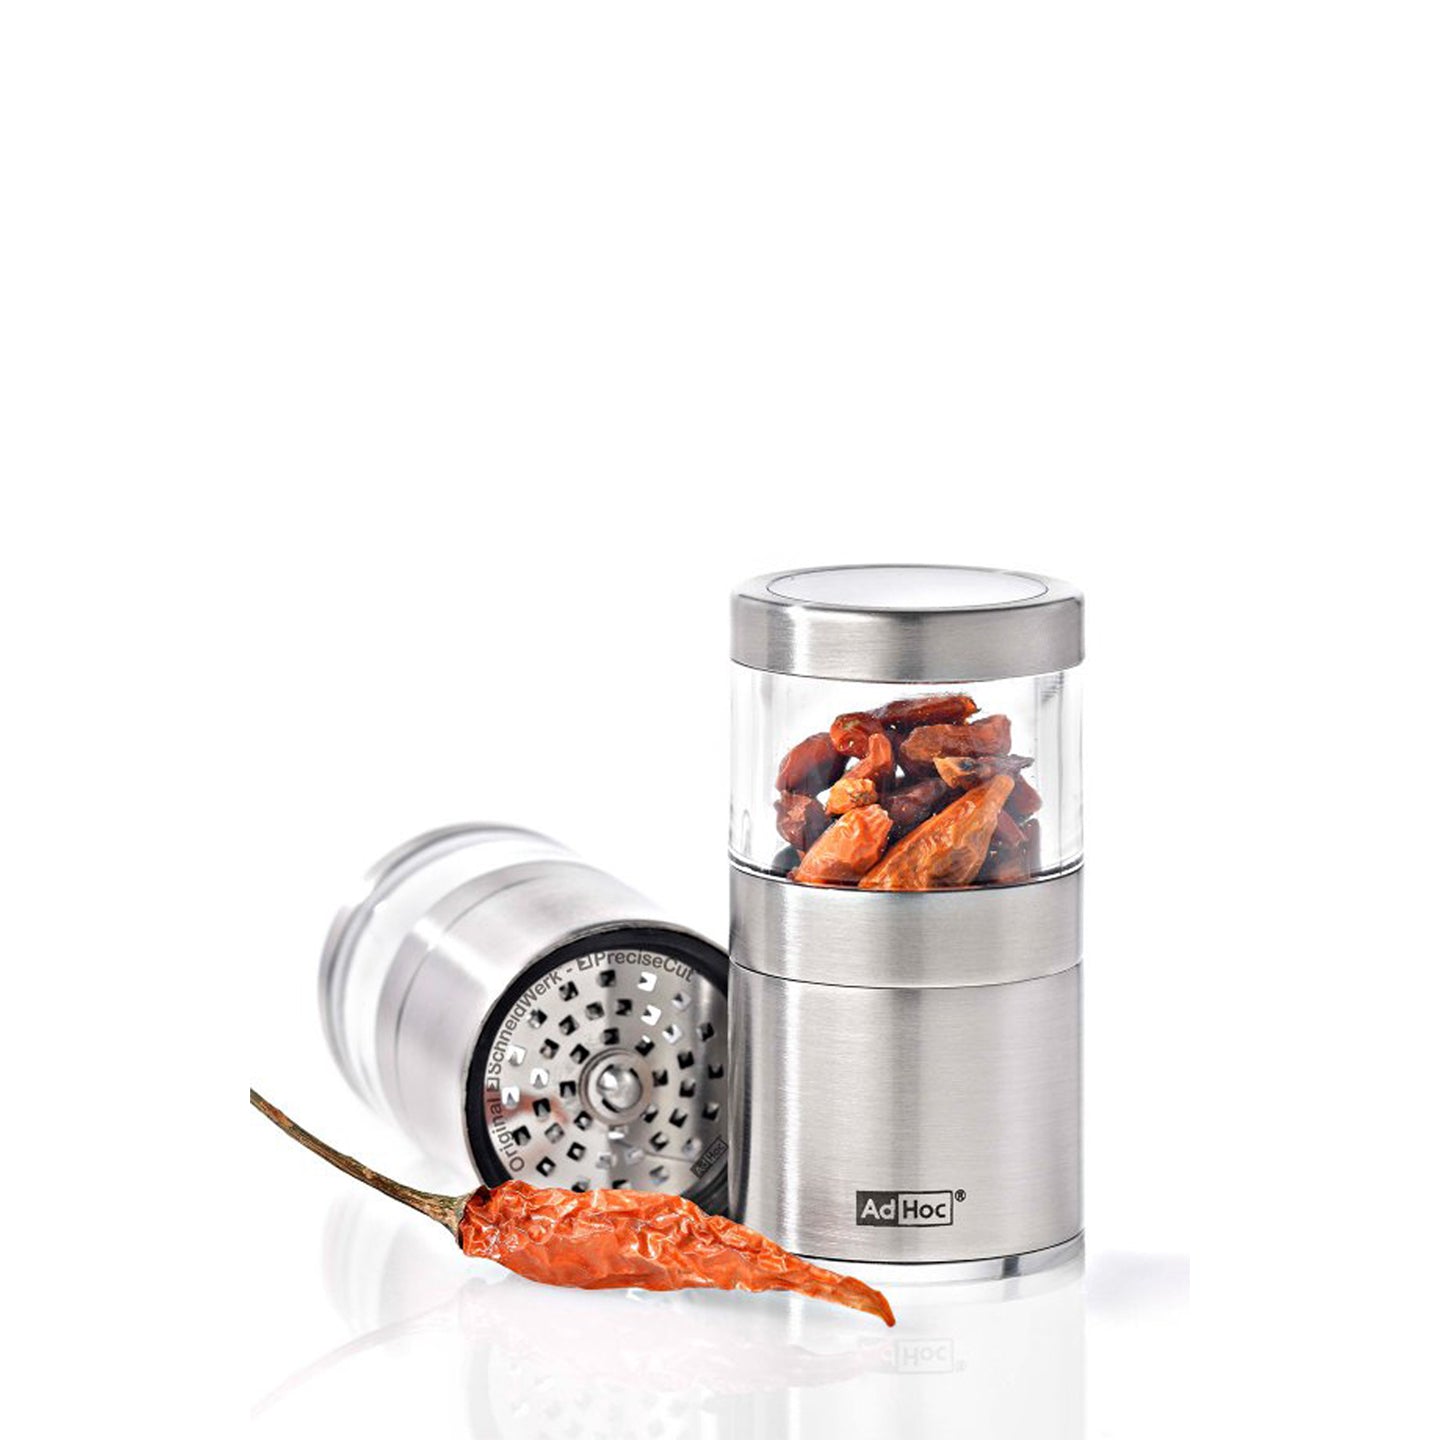 Qoo10 - Chili Pepper Cutter : Home Electronics